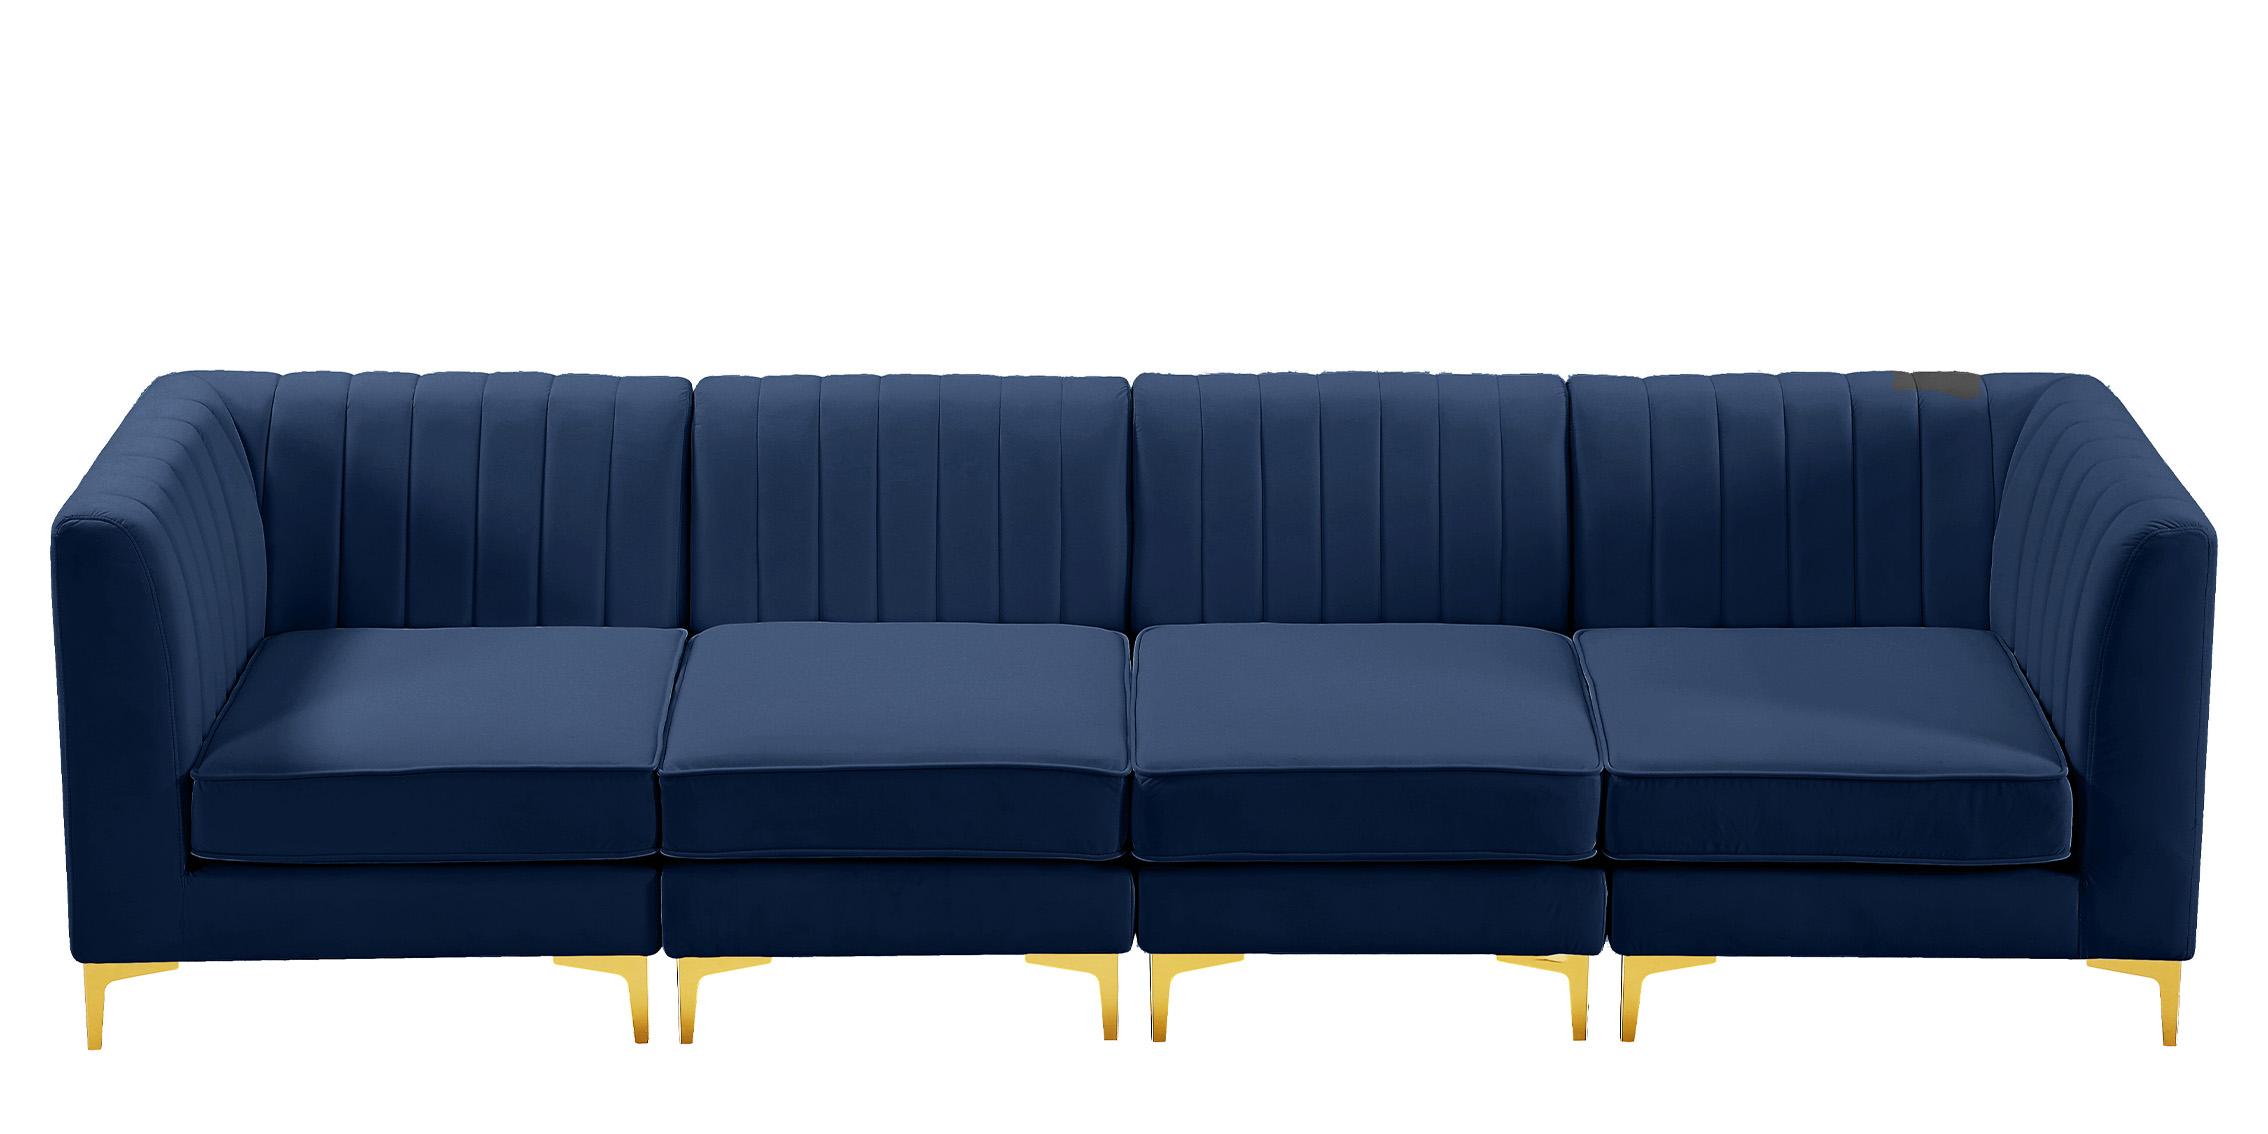 

    
Meridian Furniture ALINA 604Navy-S119 Modular Sectional Sofa Navy 604Navy-S119
